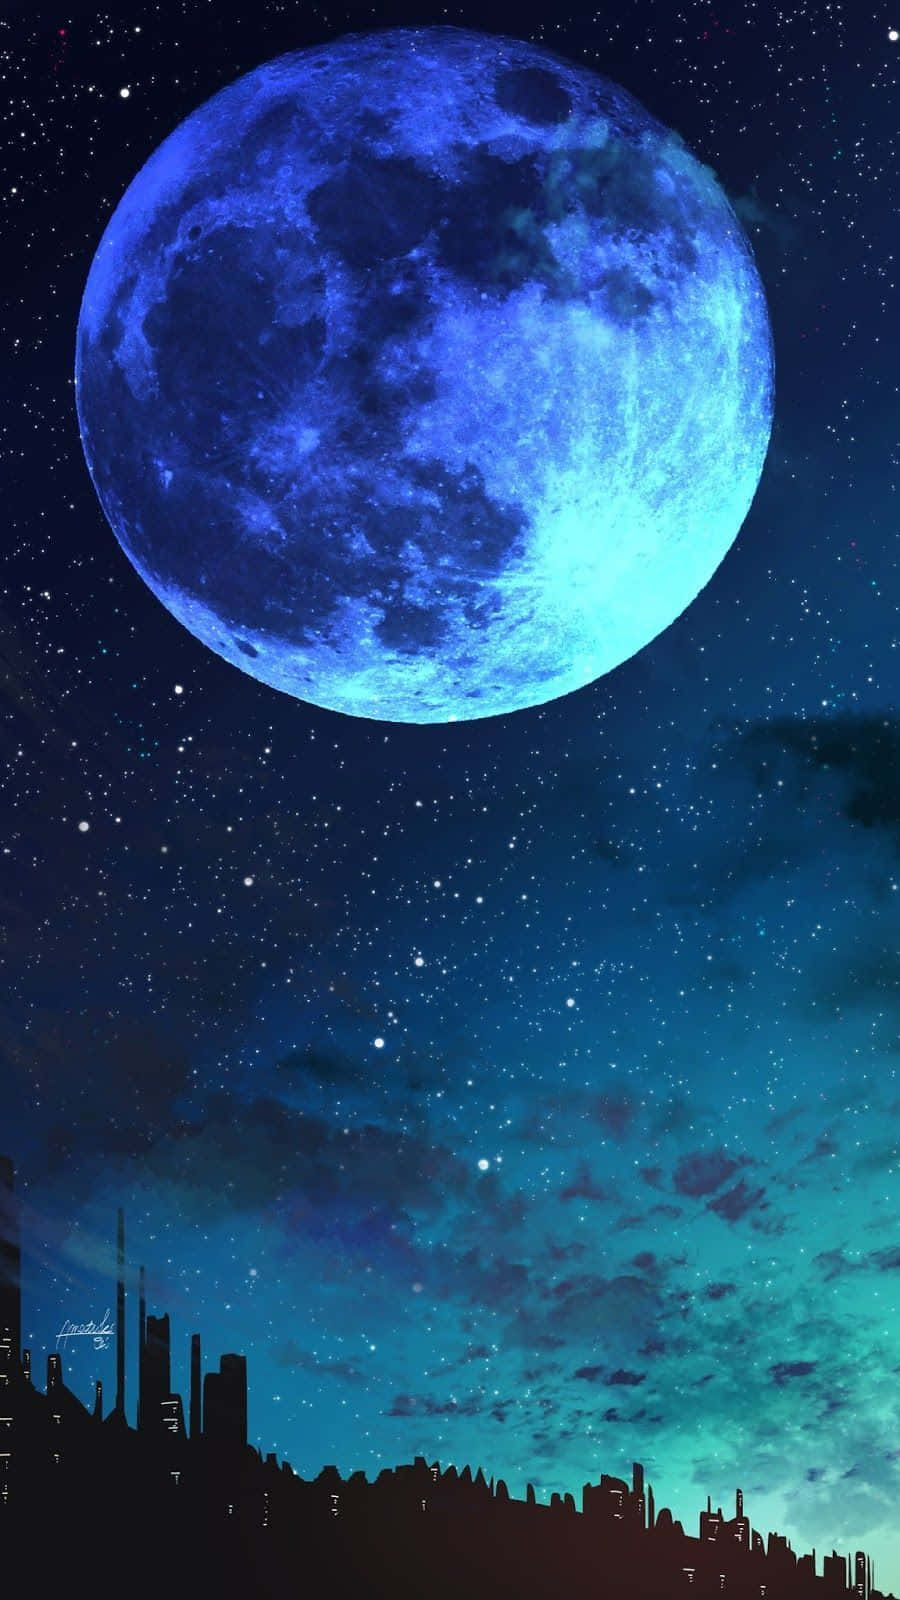 Søg efter eventyr udenfor horisonten med Moon Iphone 8 Plus Wallpaper. Wallpaper